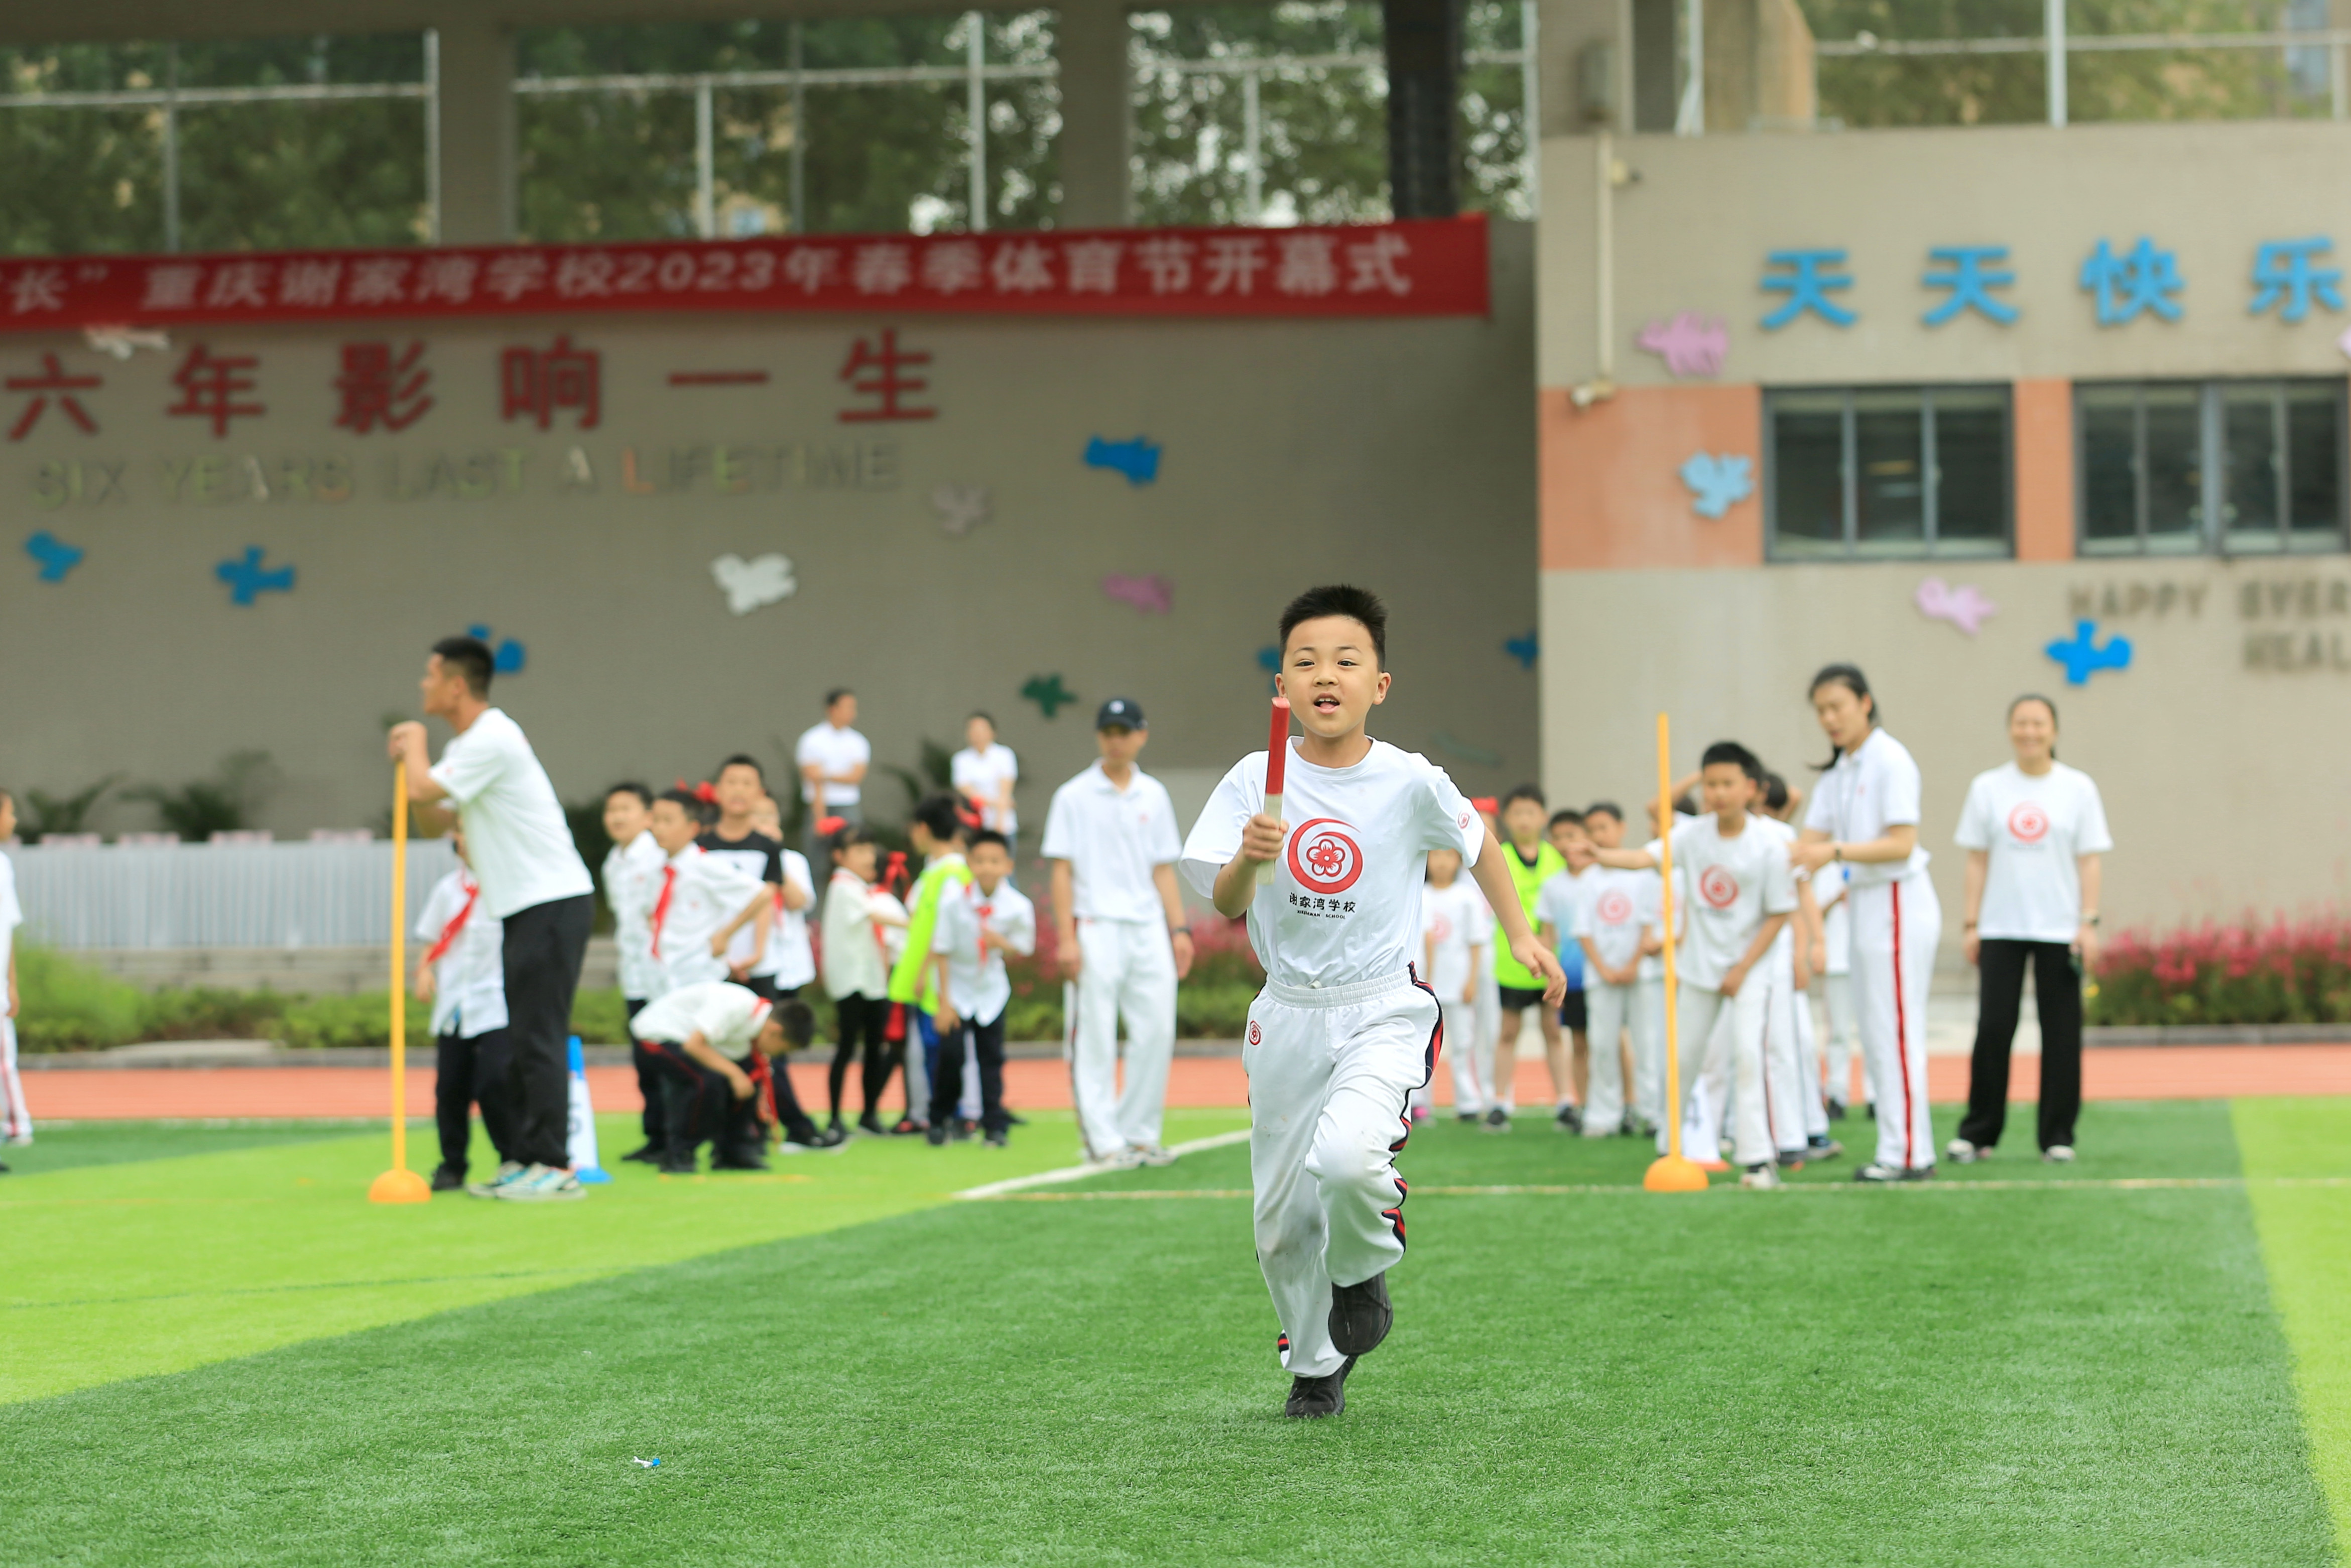 以体育促五育融合——重庆谢家湾学校的体教融合路